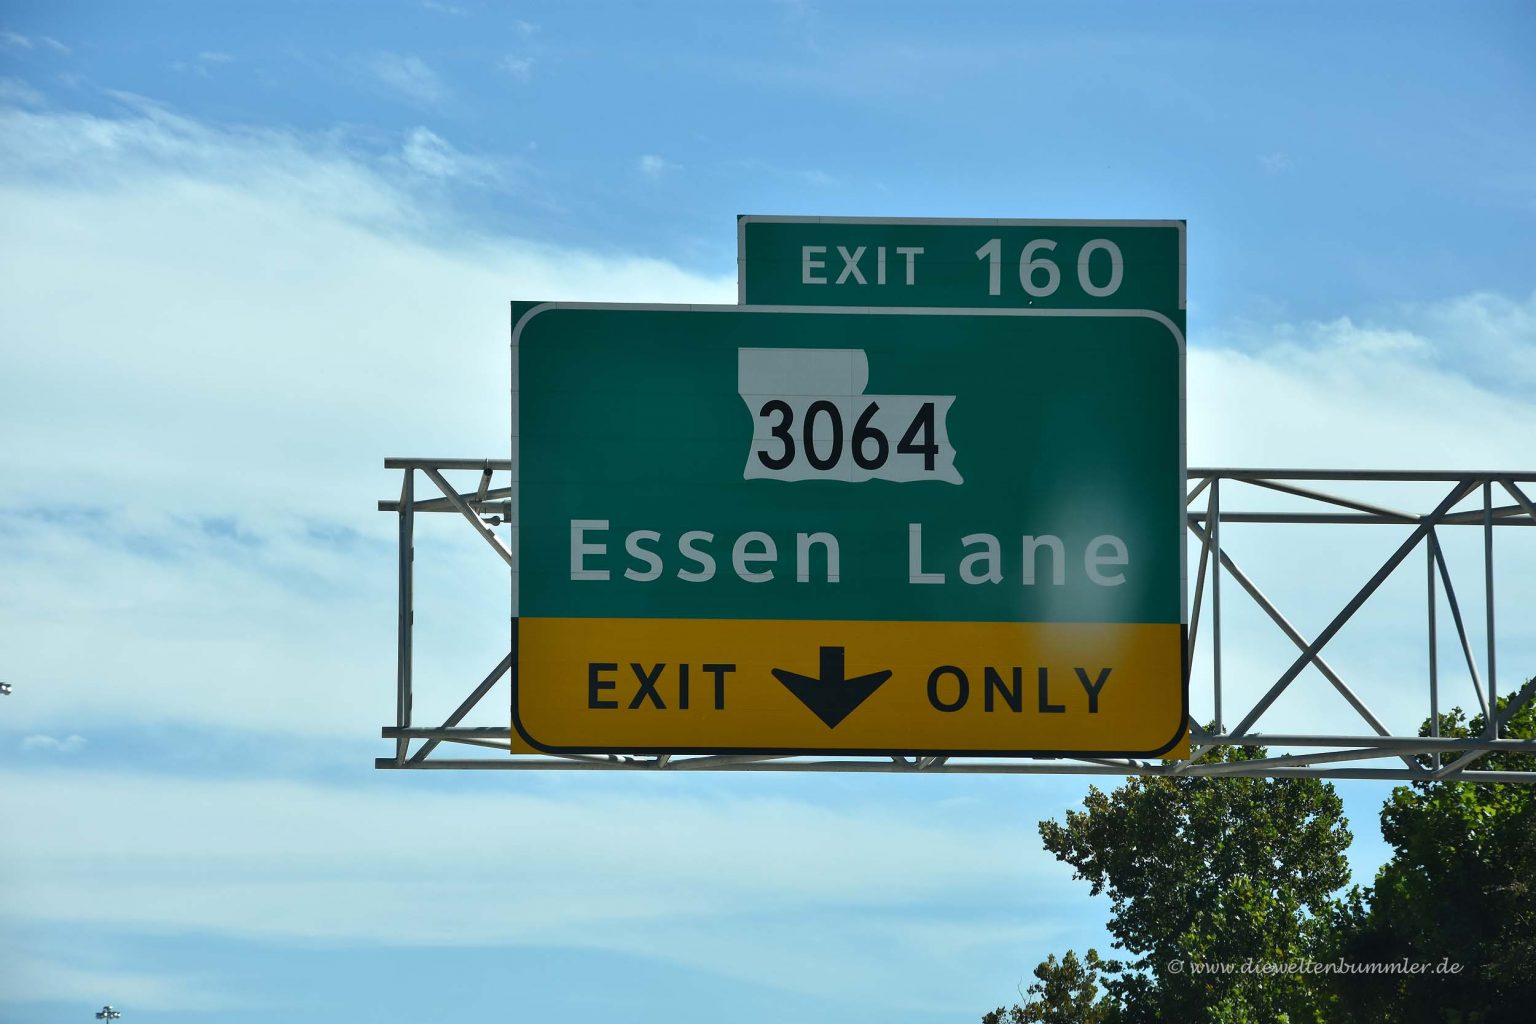 Last Exit: Essen Lane